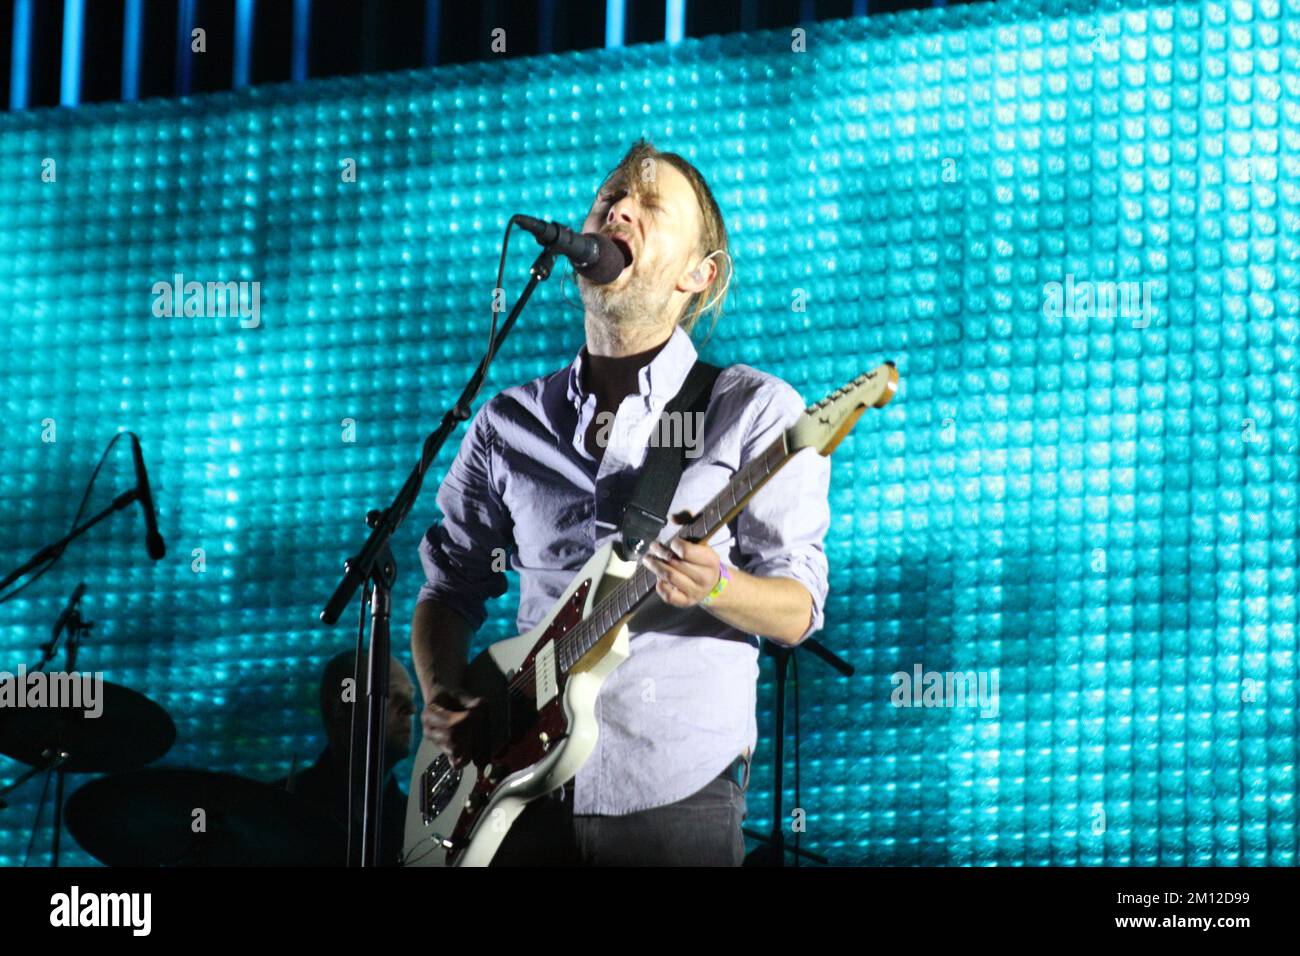 Coachella - Radiohead in concert Stock Photo